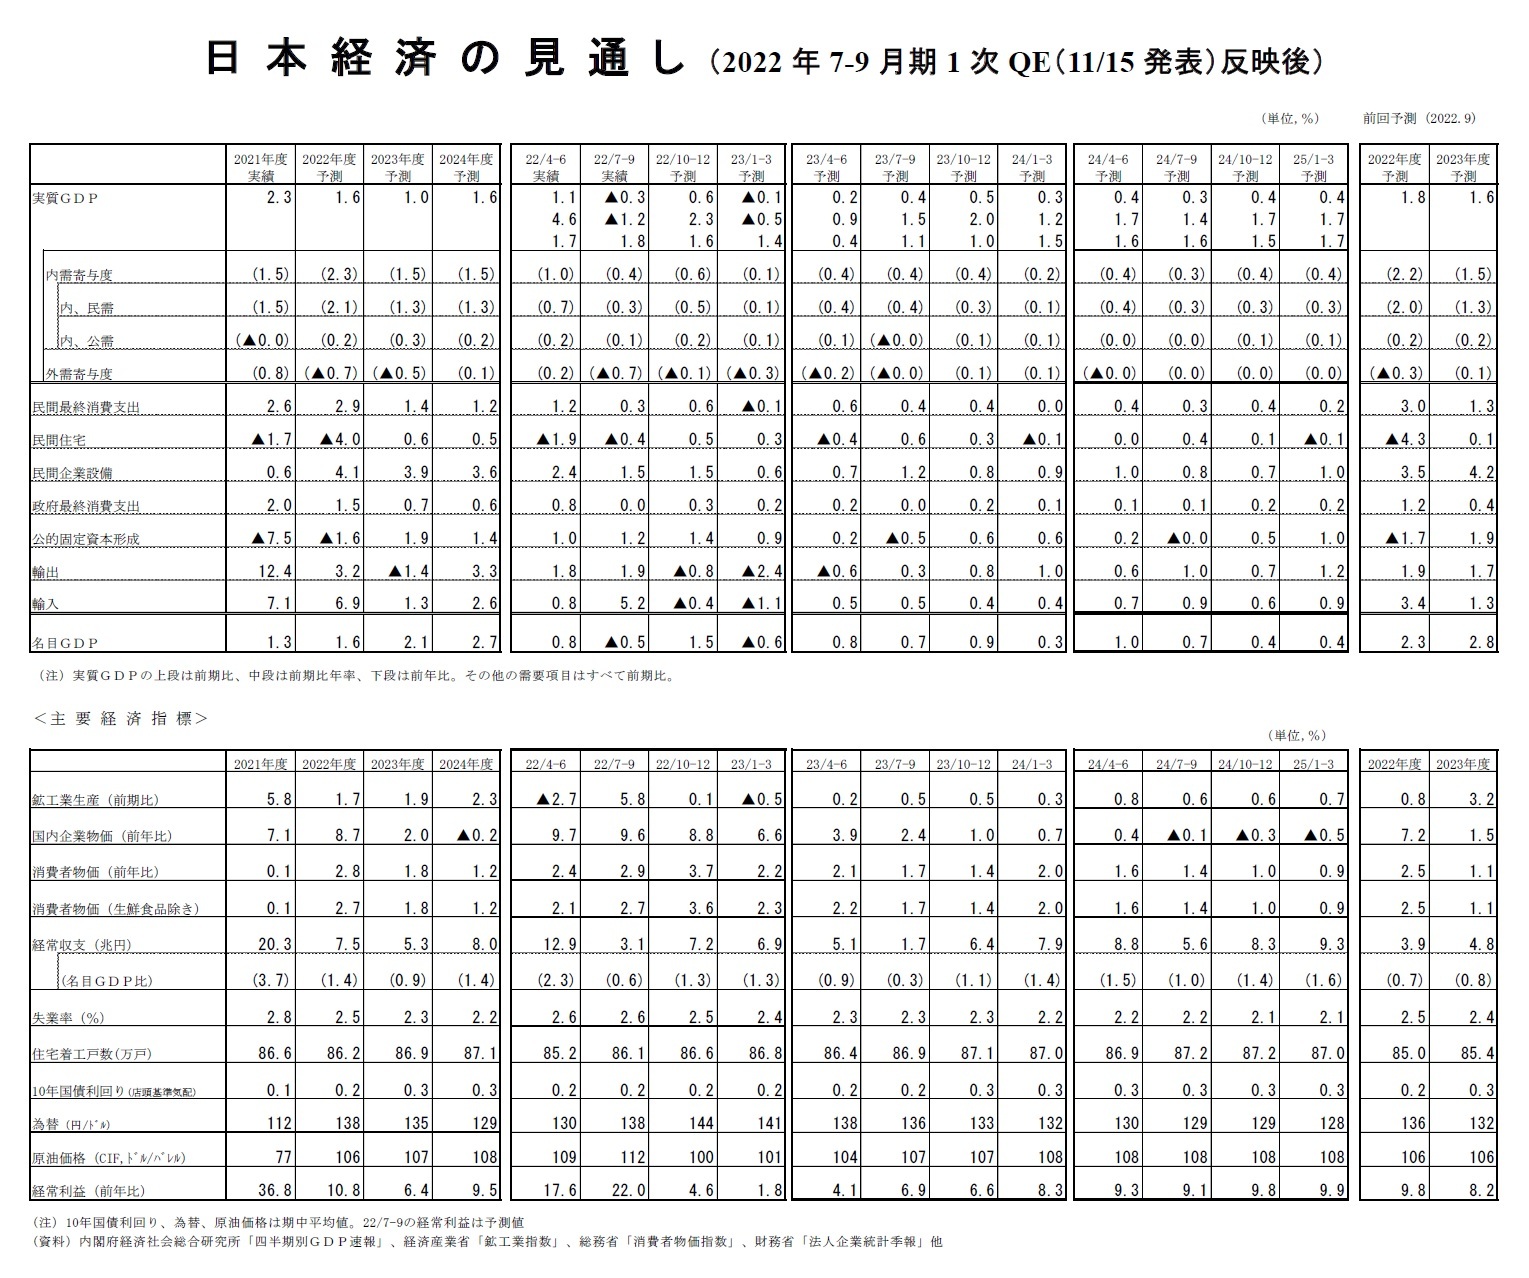 日本経済の見通し（2022年7-9月期1次QE（11/15発表）反映後）